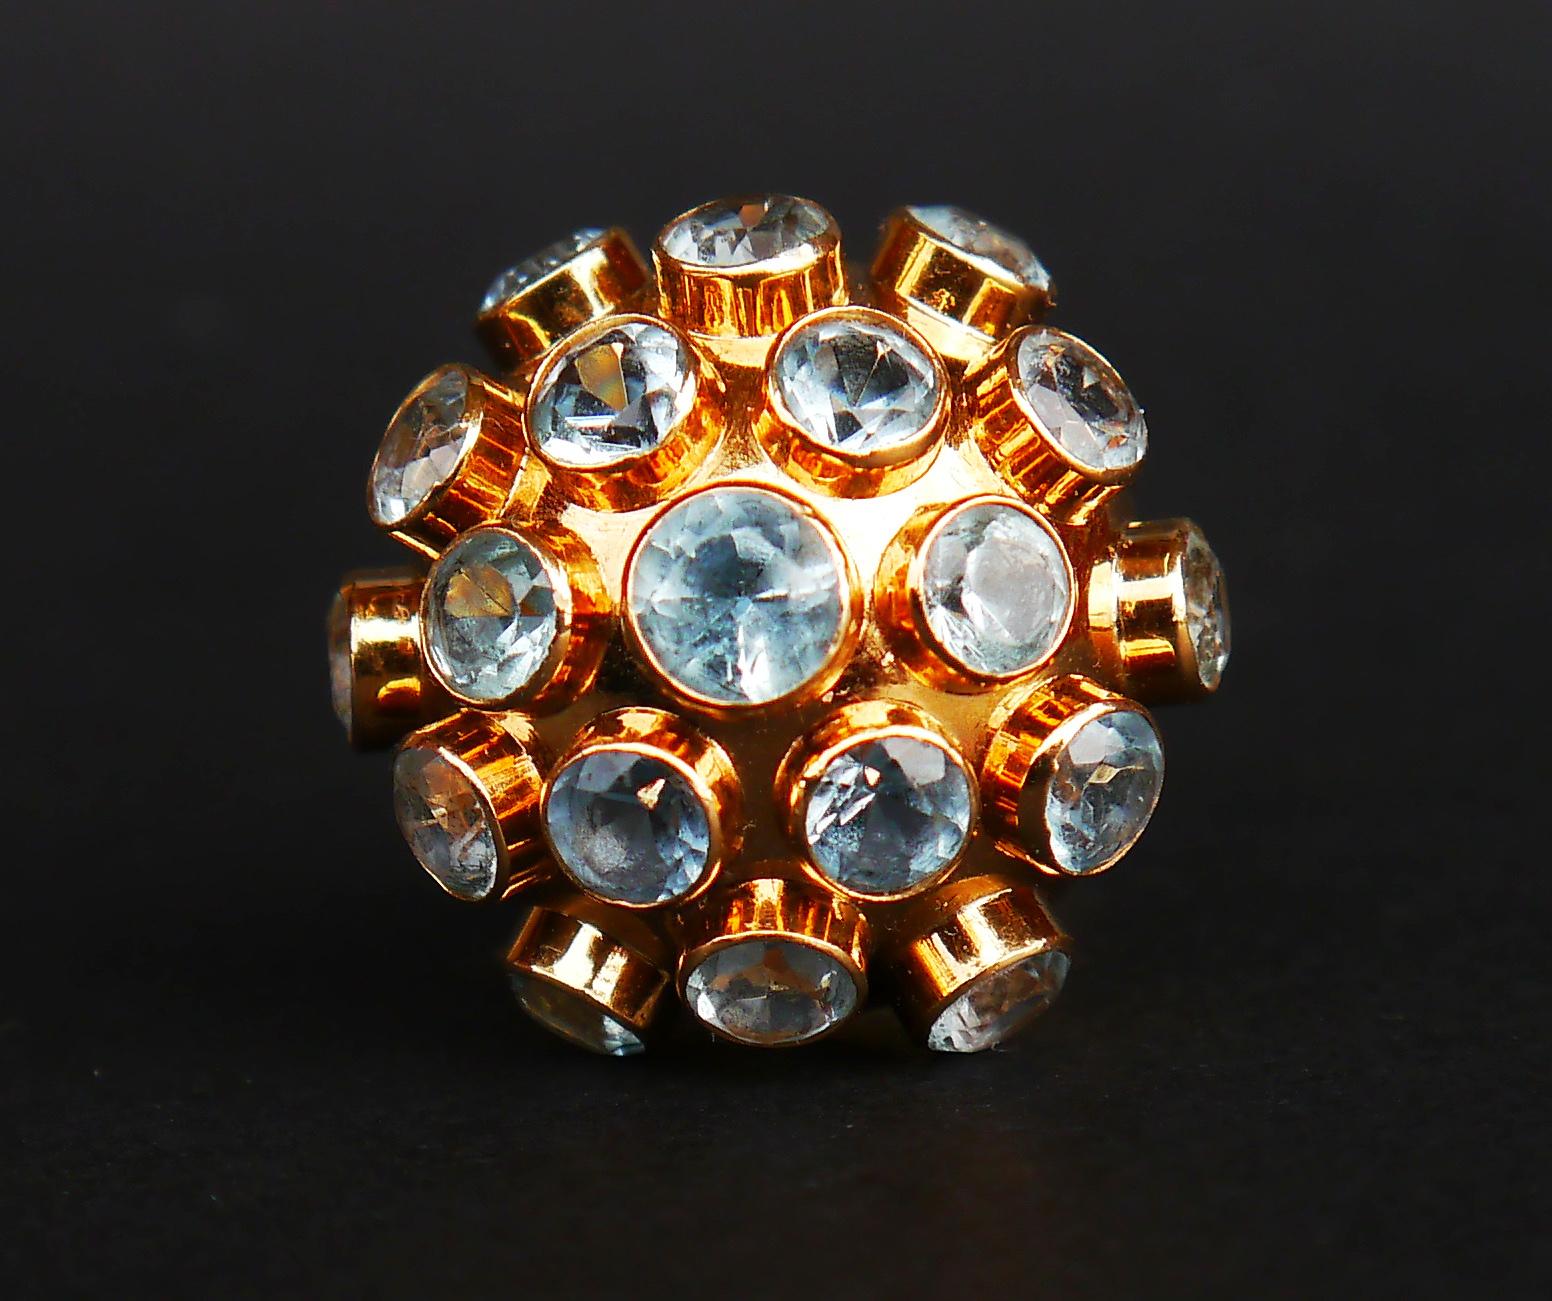 Retro-Cocktail Sputnik Ring von Fancy Design, sehr ungewöhnlich aussehende Ring !

Wahrscheinlich hergestellt von H. Stern, Brasilien. 18K Punzierungen. Metallteile aus massivem 18K (getestet) Gelbgold

Abmessungen: Kuppel Ø 23 mm. 19 natürliche